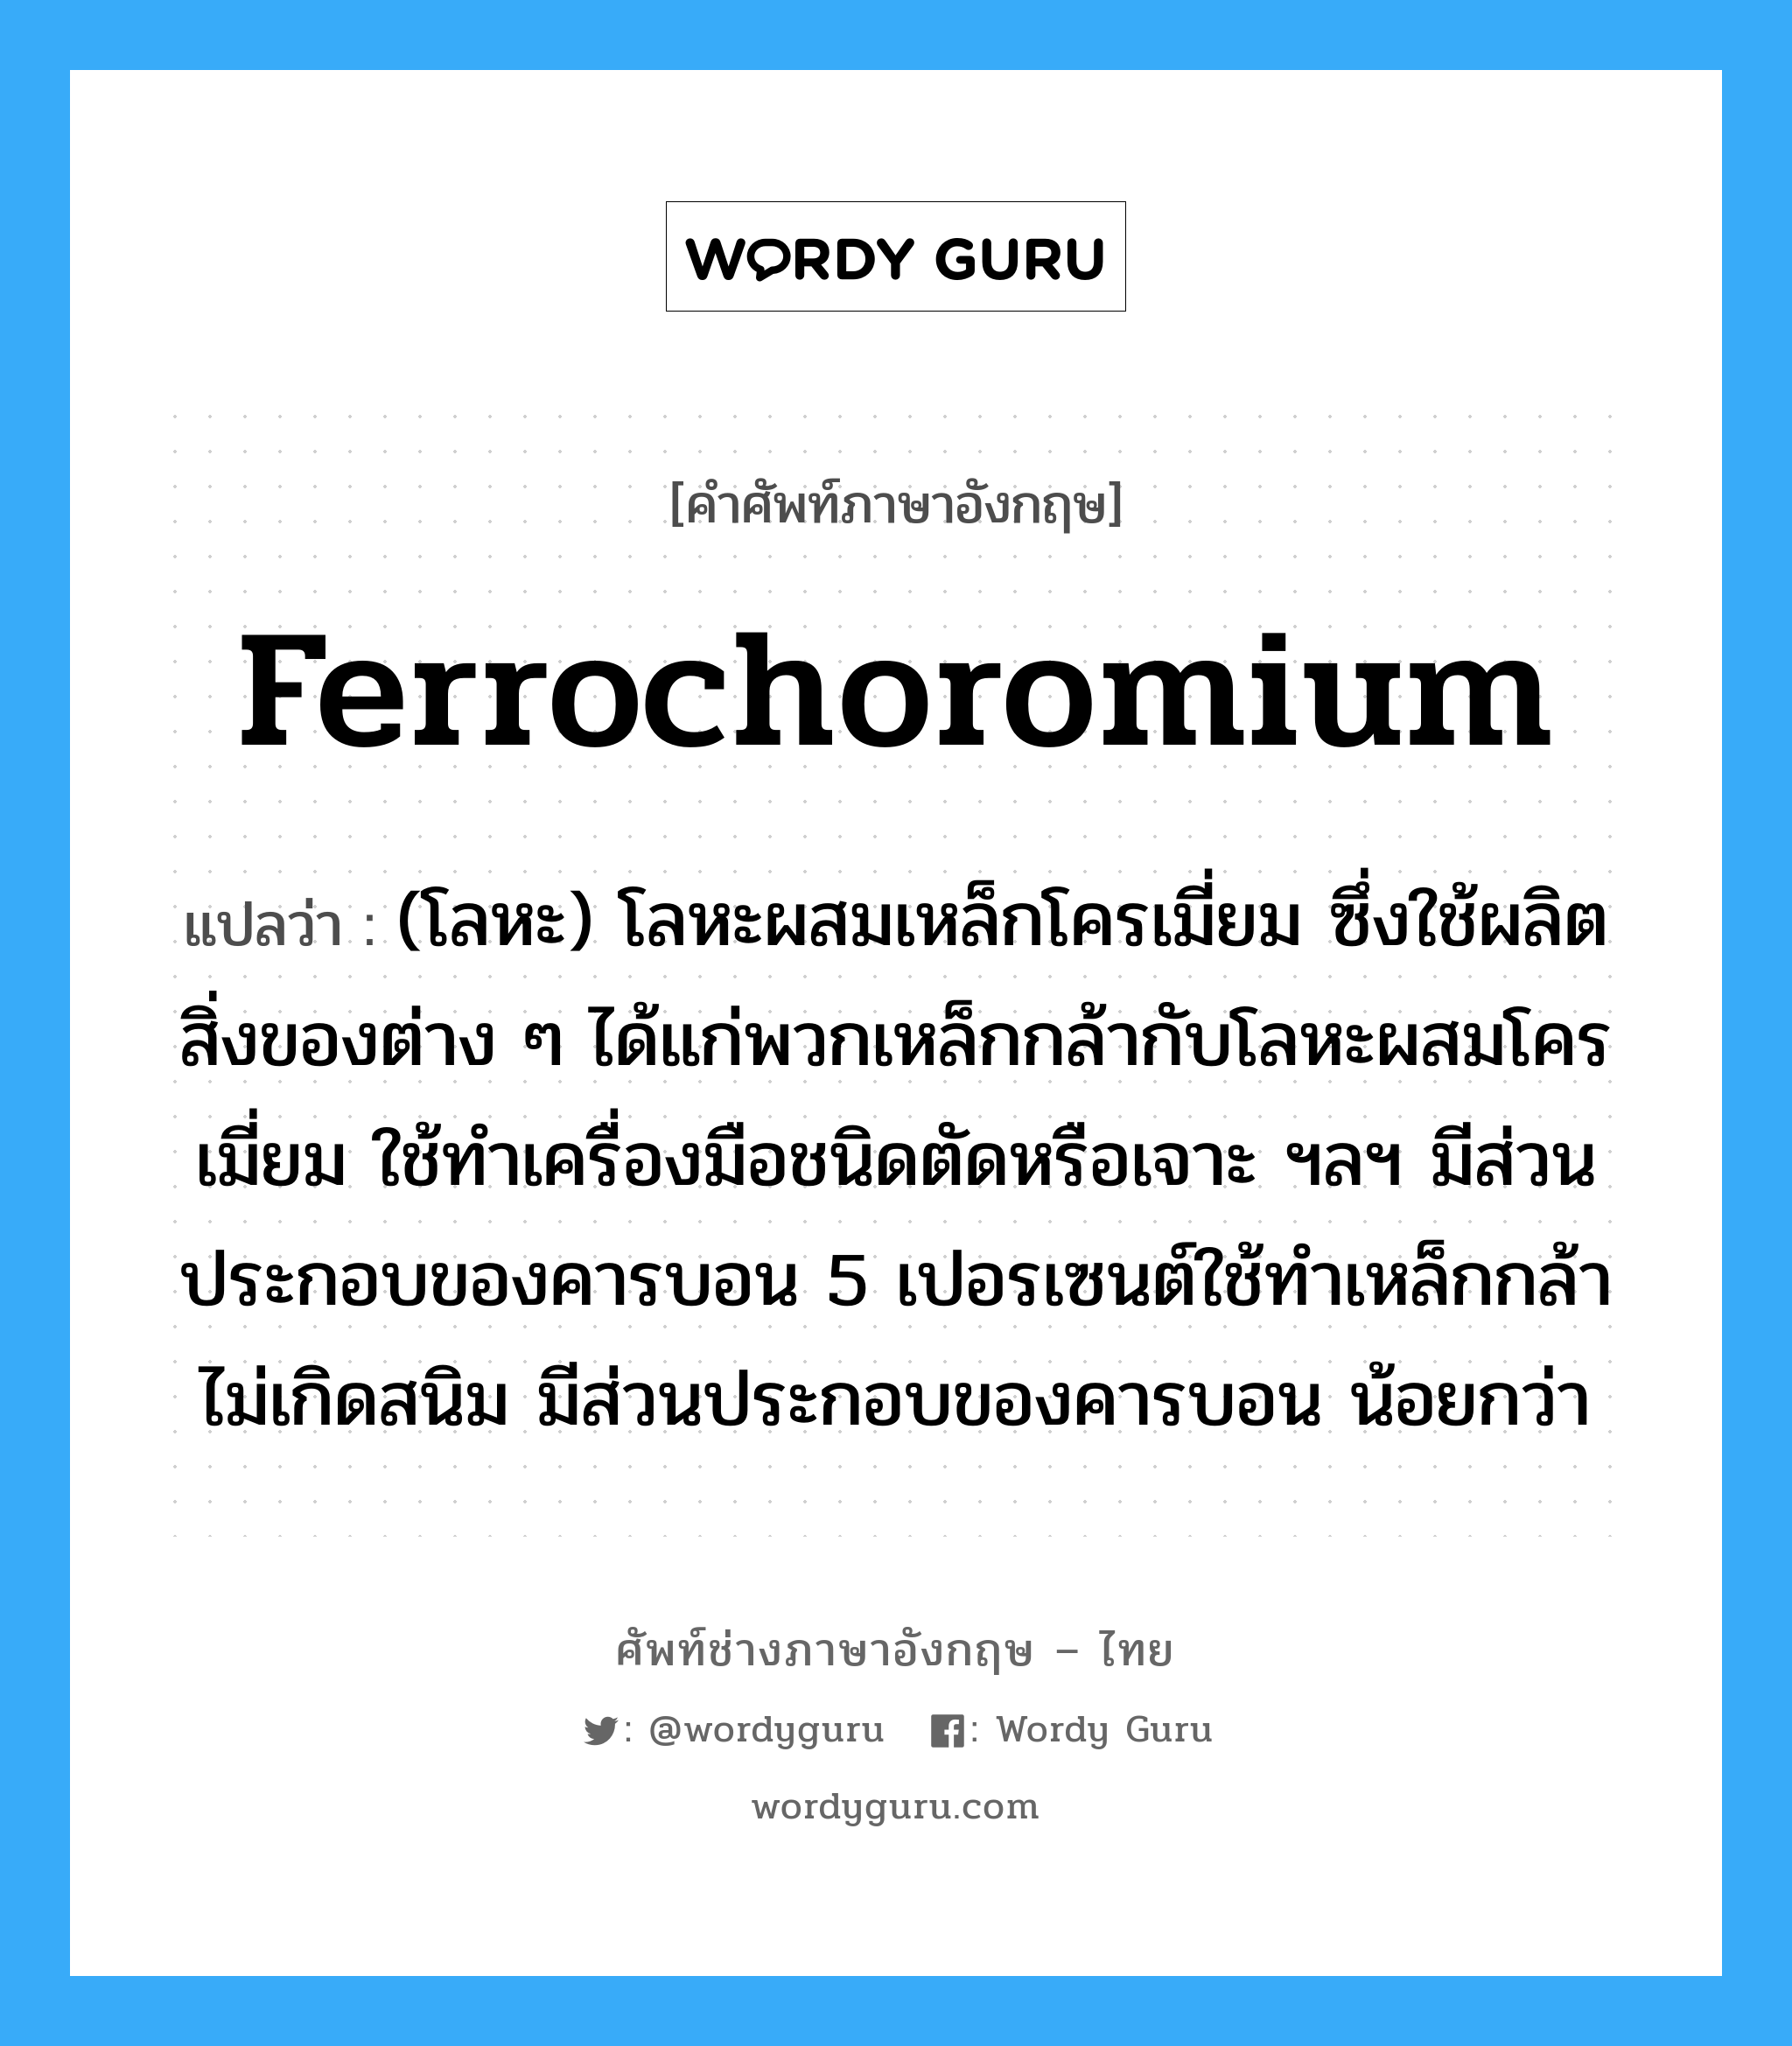 ferrochoromium แปลว่า?, คำศัพท์ช่างภาษาอังกฤษ - ไทย ferrochoromium คำศัพท์ภาษาอังกฤษ ferrochoromium แปลว่า (โลหะ) โลหะผสมเหล็กโครเมี่ยม ซึ่งใช้ผลิตสิ่งของต่าง ๆ ได้แก่พวกเหล็กกล้ากับโลหะผสมโครเมี่ยม ใช้ทำเครื่องมือชนิดตัดหรือเจาะ ฯลฯ มีส่วนประกอบของคารบอน 5 เปอรเซนต์ใช้ทำเหล็กกล้าไม่เกิดสนิม มีส่วนประกอบของคารบอน น้อยกว่า